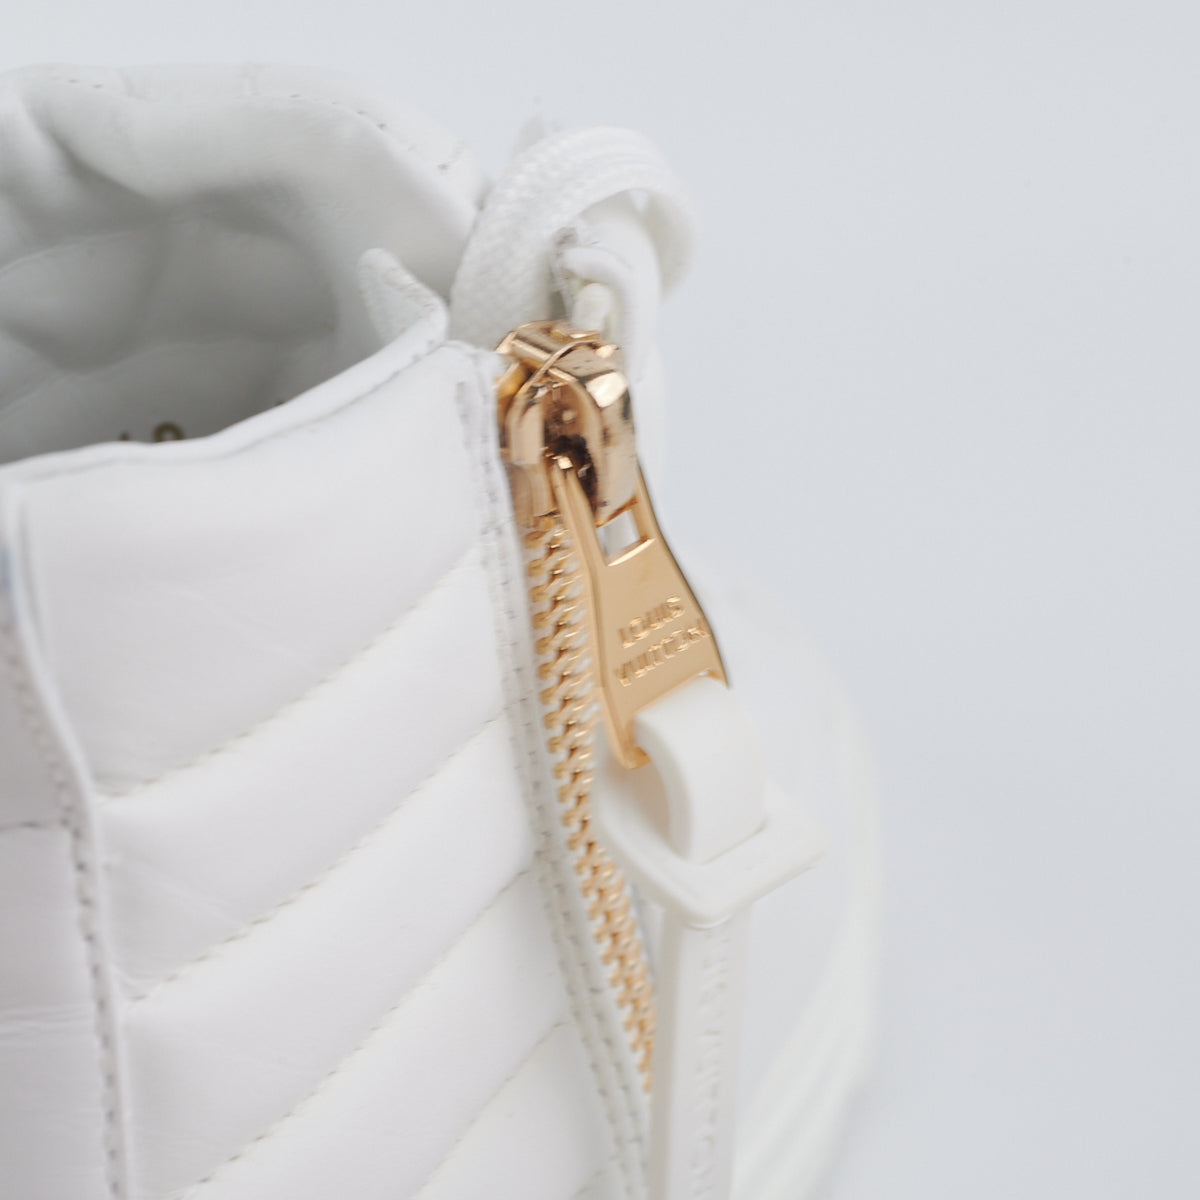 Louis Vuitton High Top White Sneaker Size 37 - THE PURSE AFFAIR